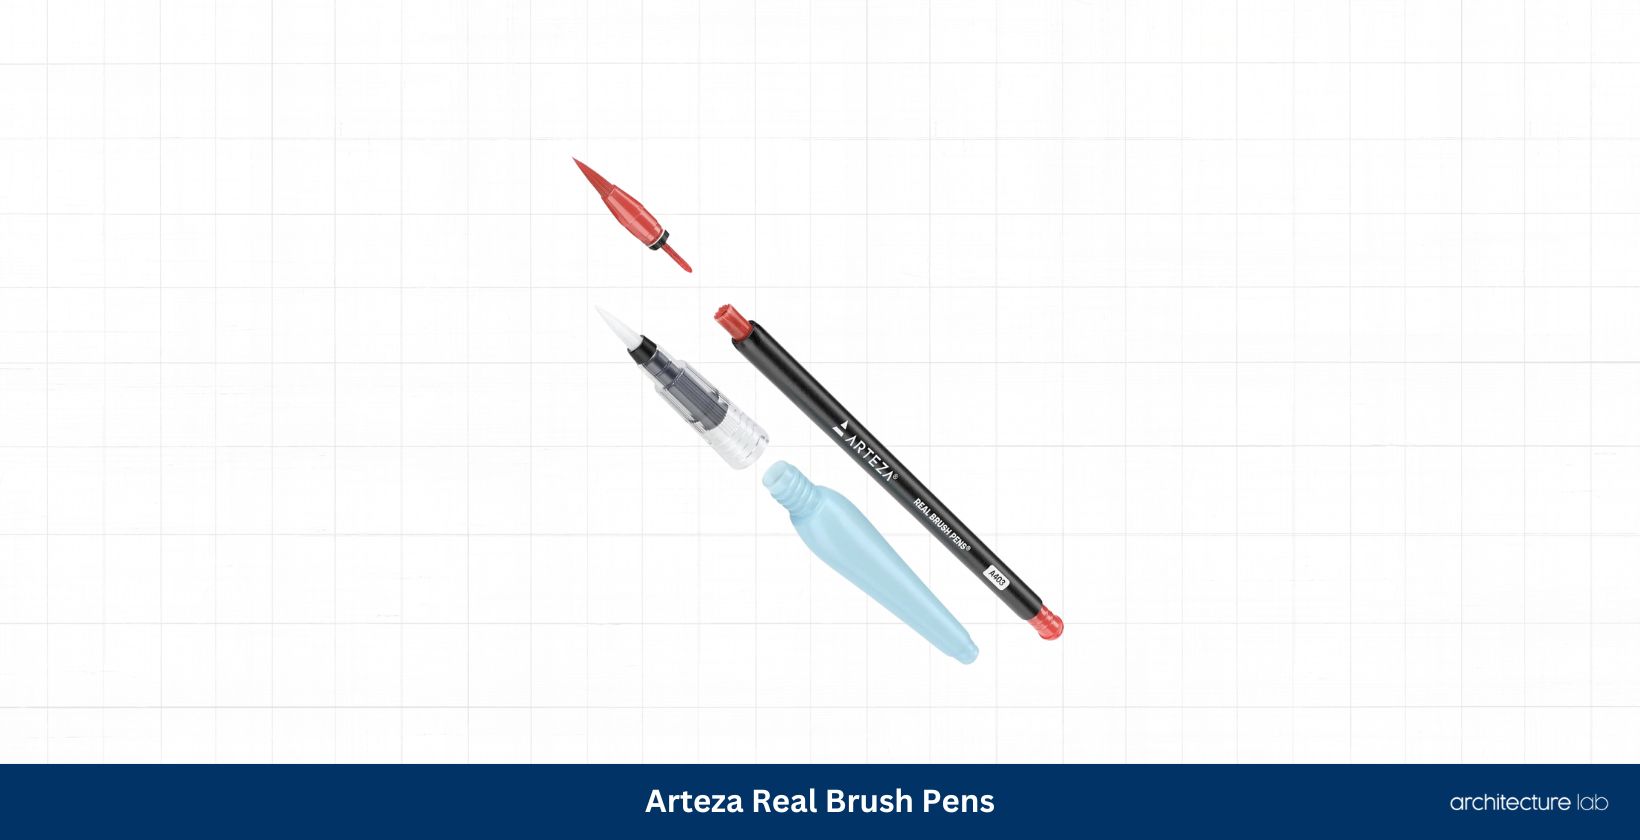 Arteza real brush pens